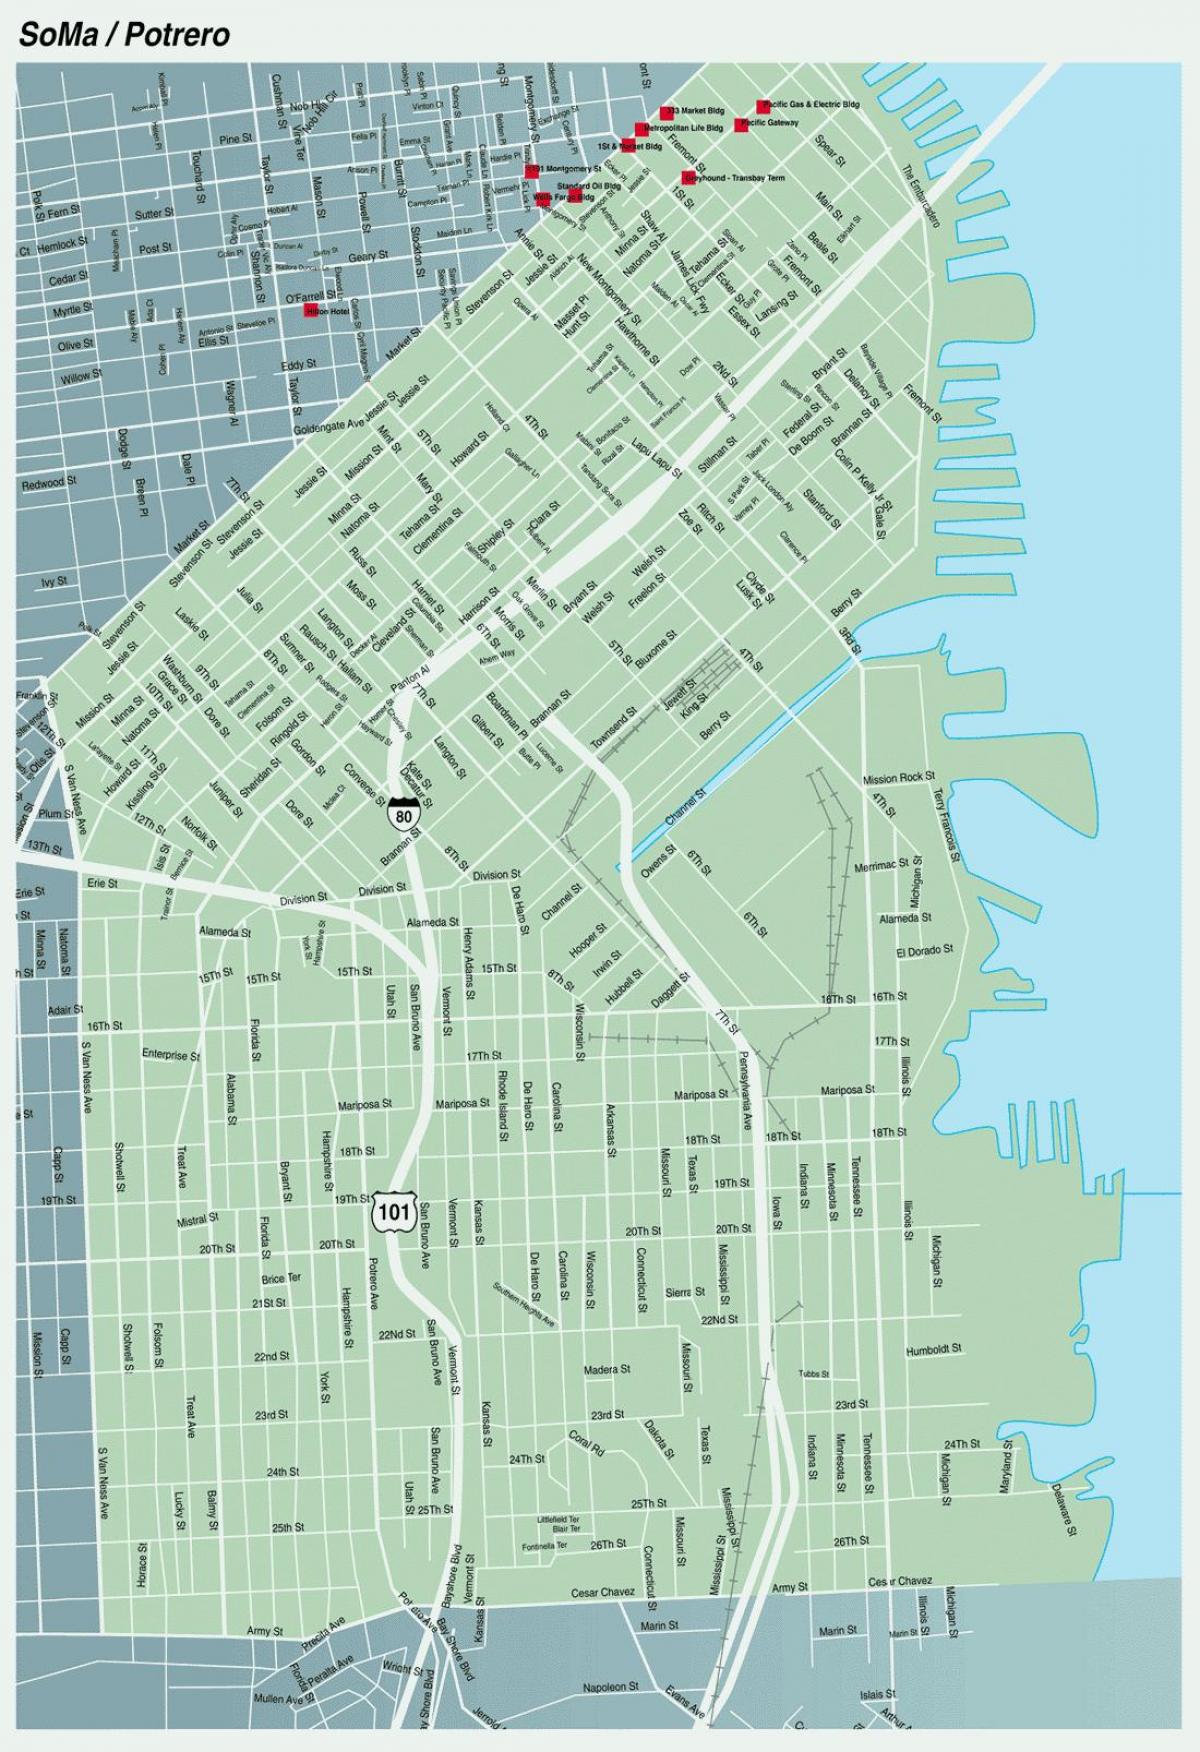 map of soma San Francisco